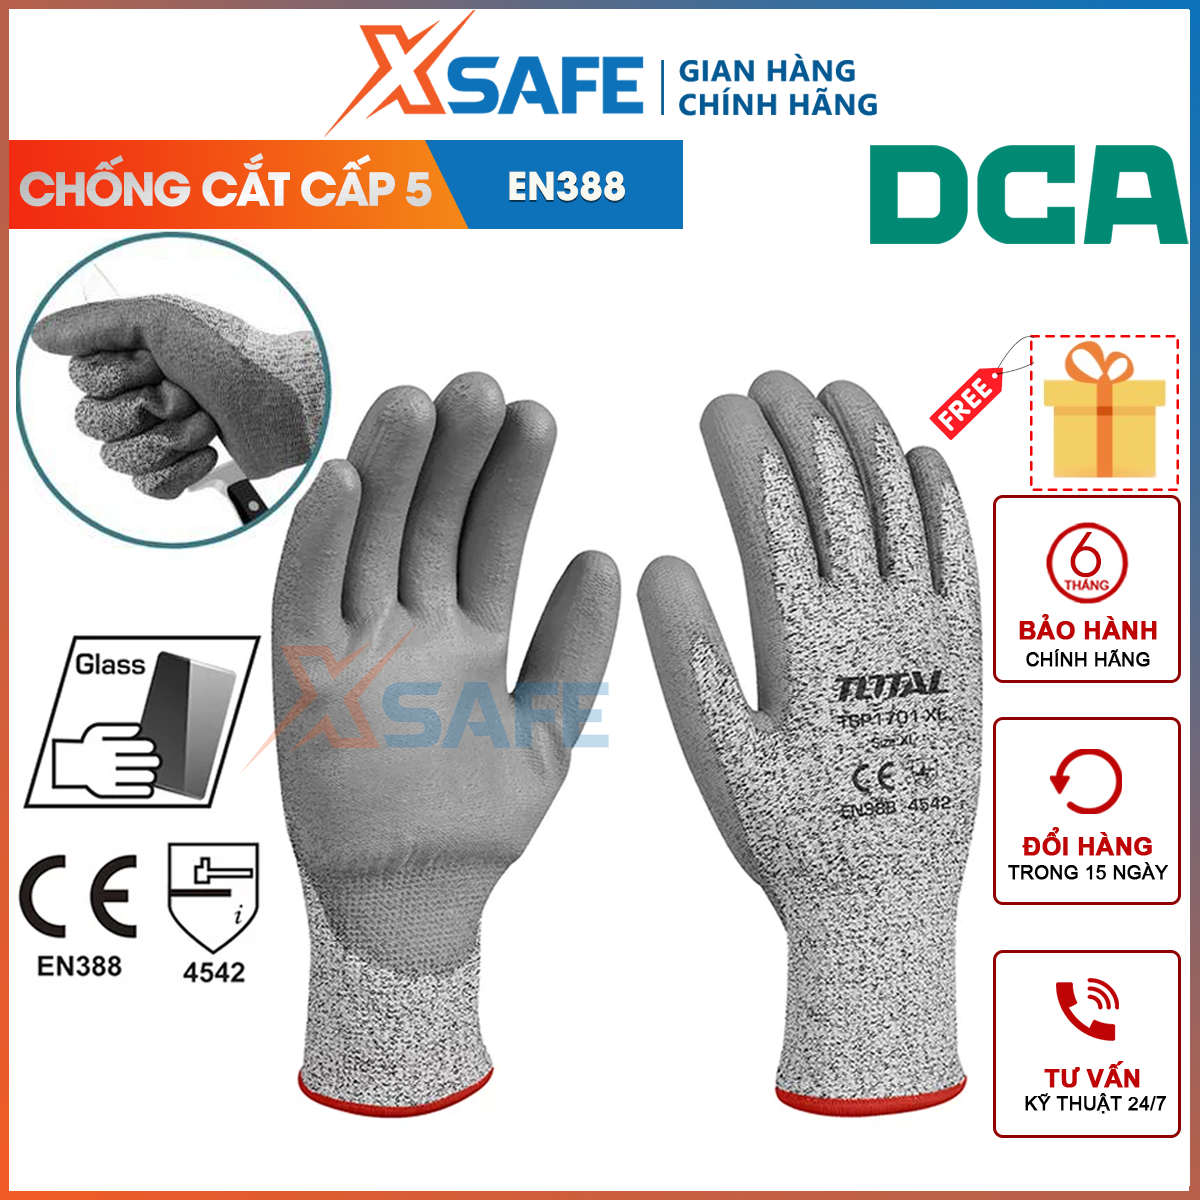 Hình ảnh 1 của mặt hàng Găng tay chống cắt Total